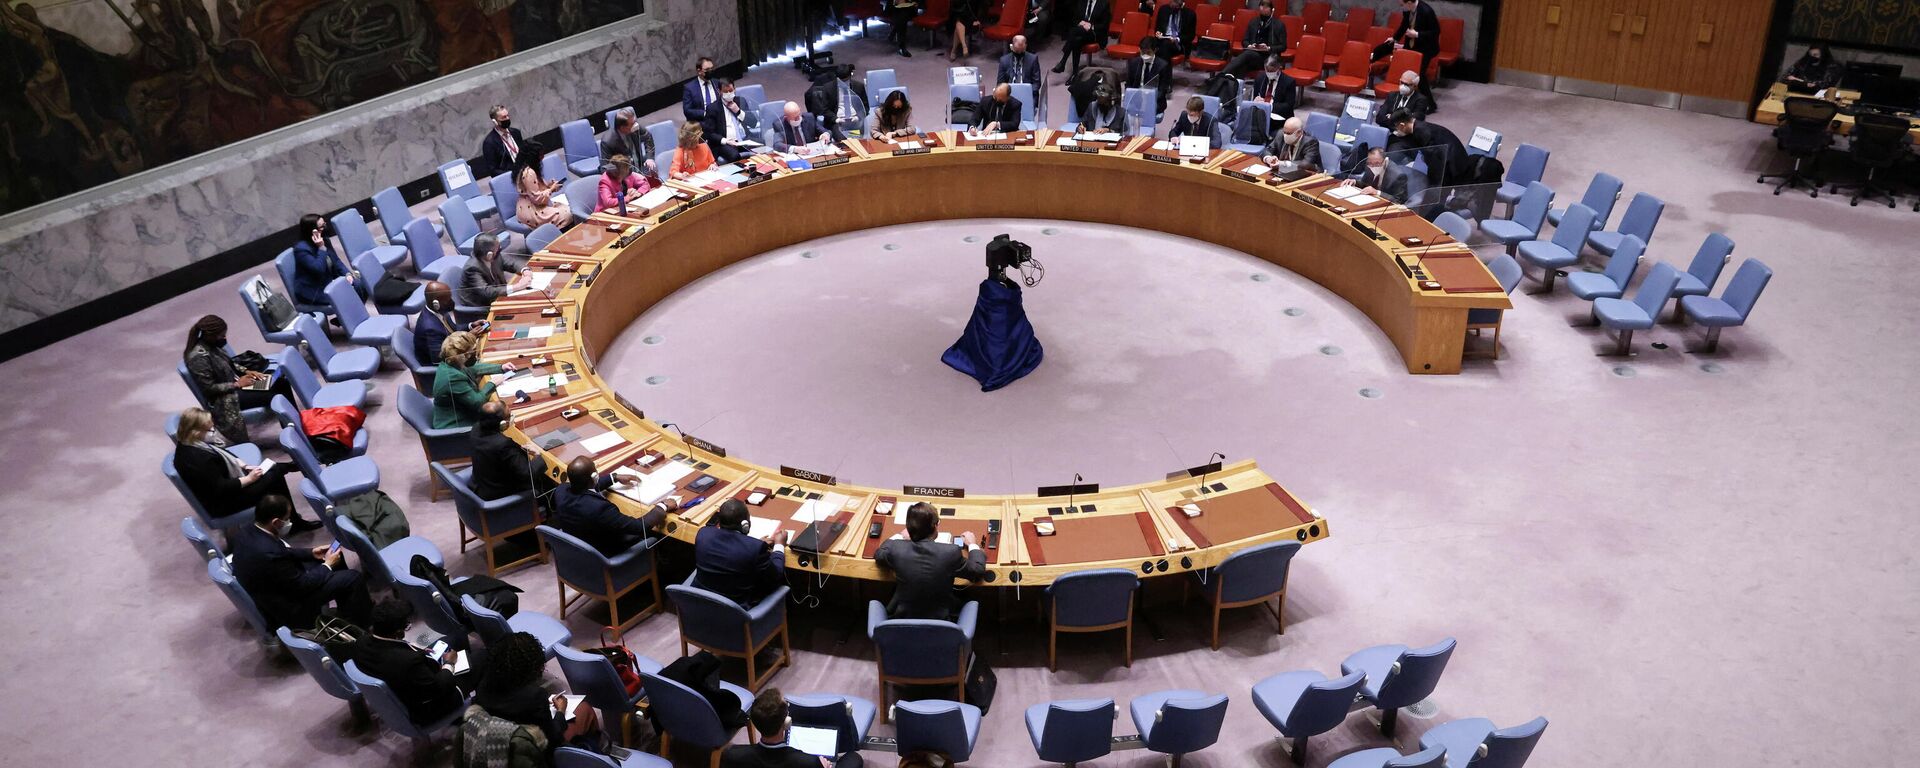 جلسة نقاش مجلس الأمن الدولي حول أزمة أوكرانيا وروسيا، الأمم المتحدة، نيويورك، الولايات المتحدة 31 يناير 2022  - سبوتنيك عربي, 1920, 01.04.2022